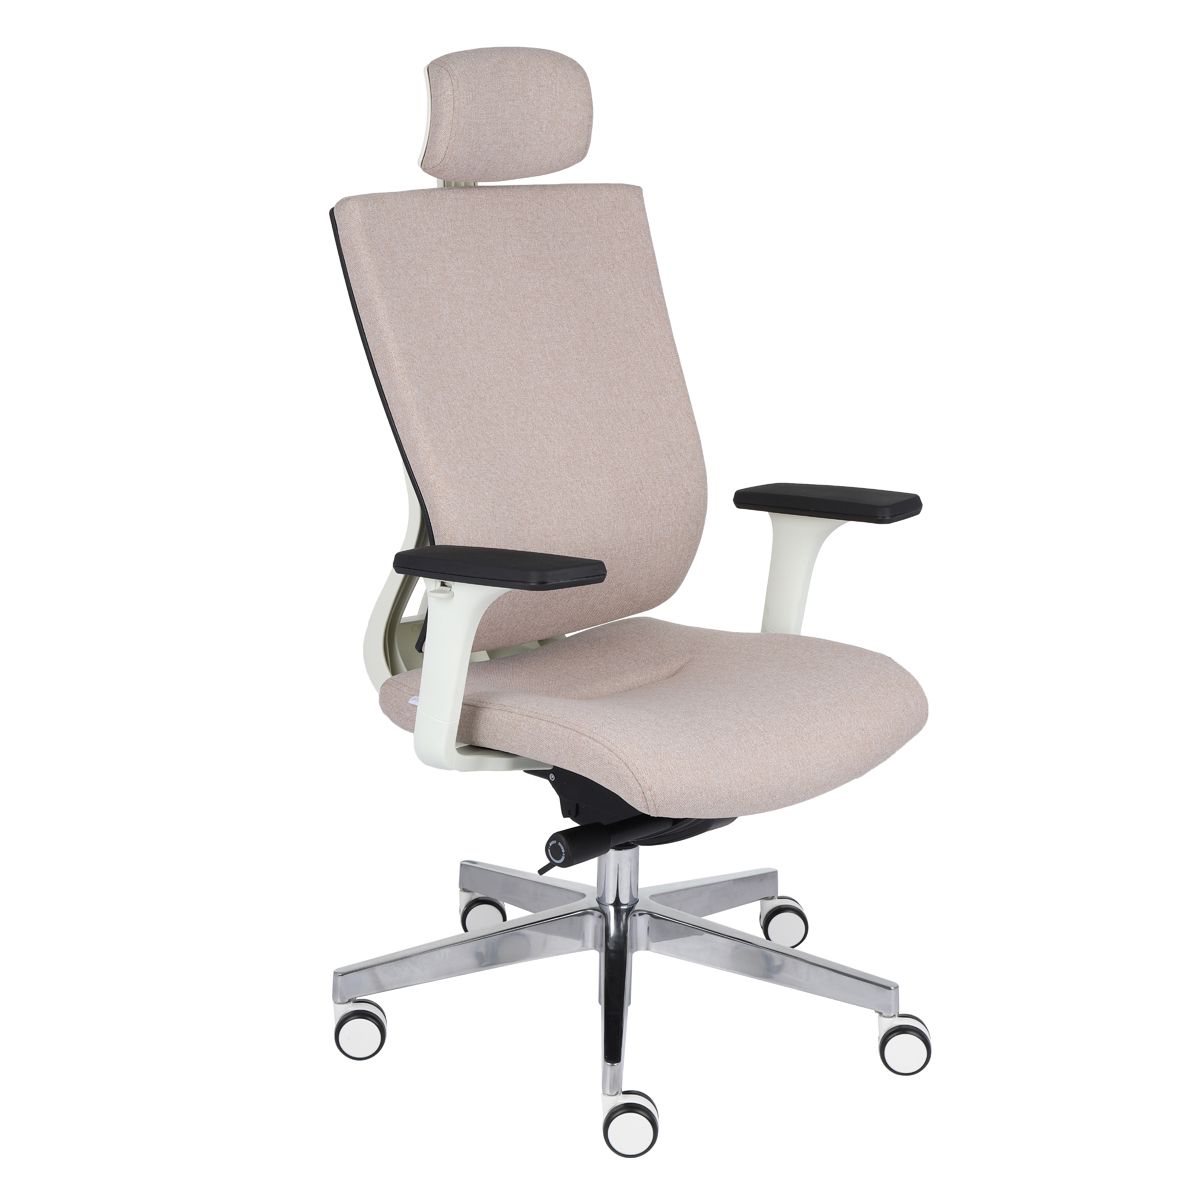 Kancelárska stolička s podrúčkami Mixerot WT HD - béžová / biela / chróm - nabbi.sk